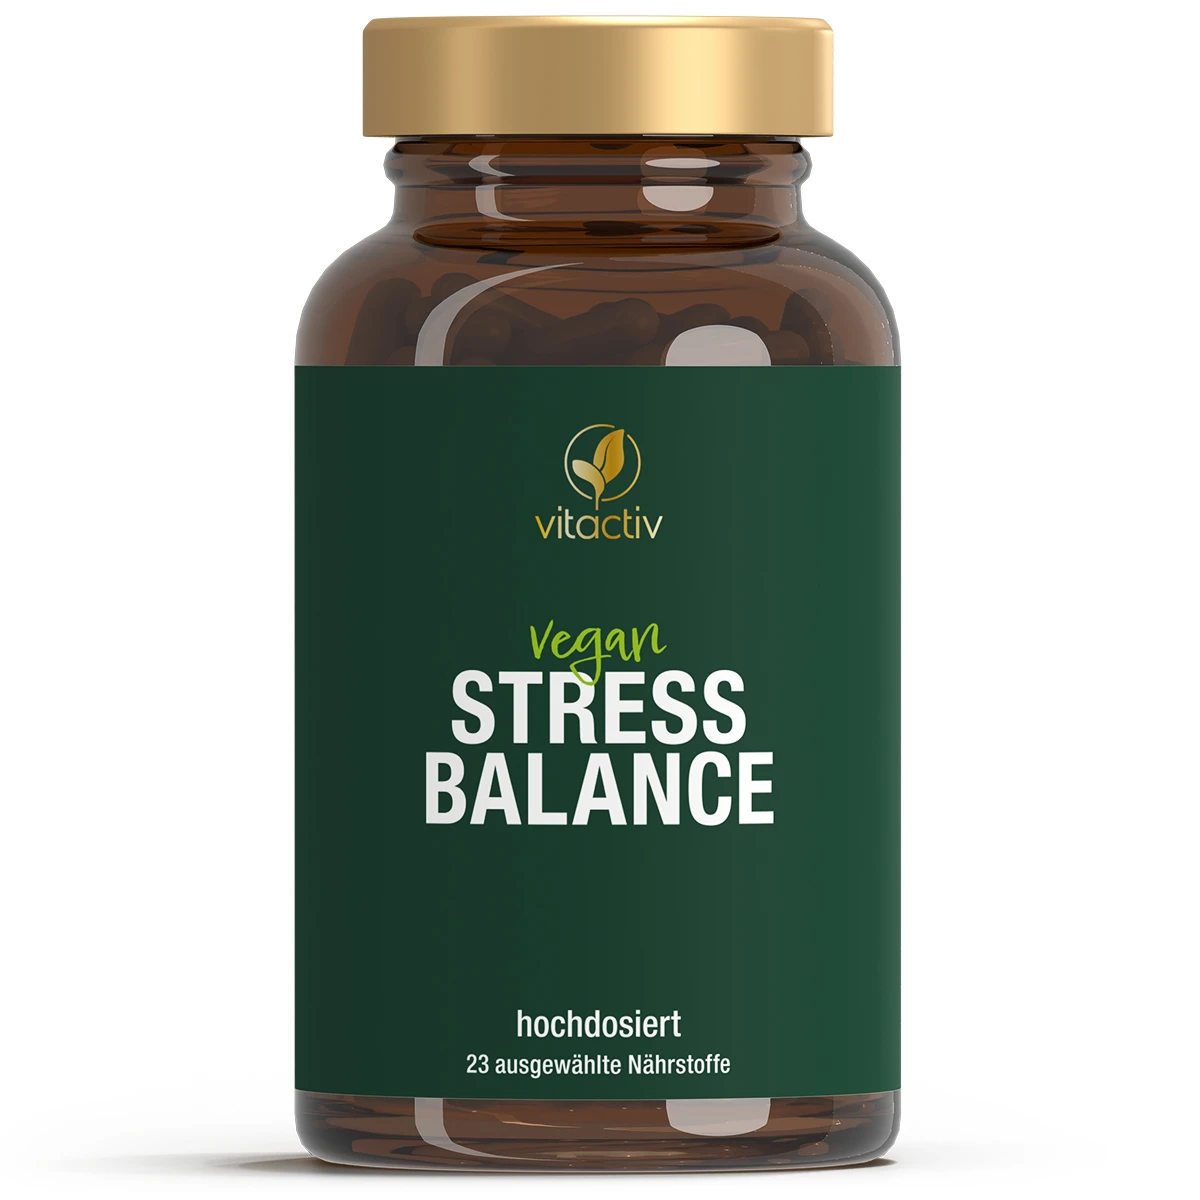 STRESS BALANCE